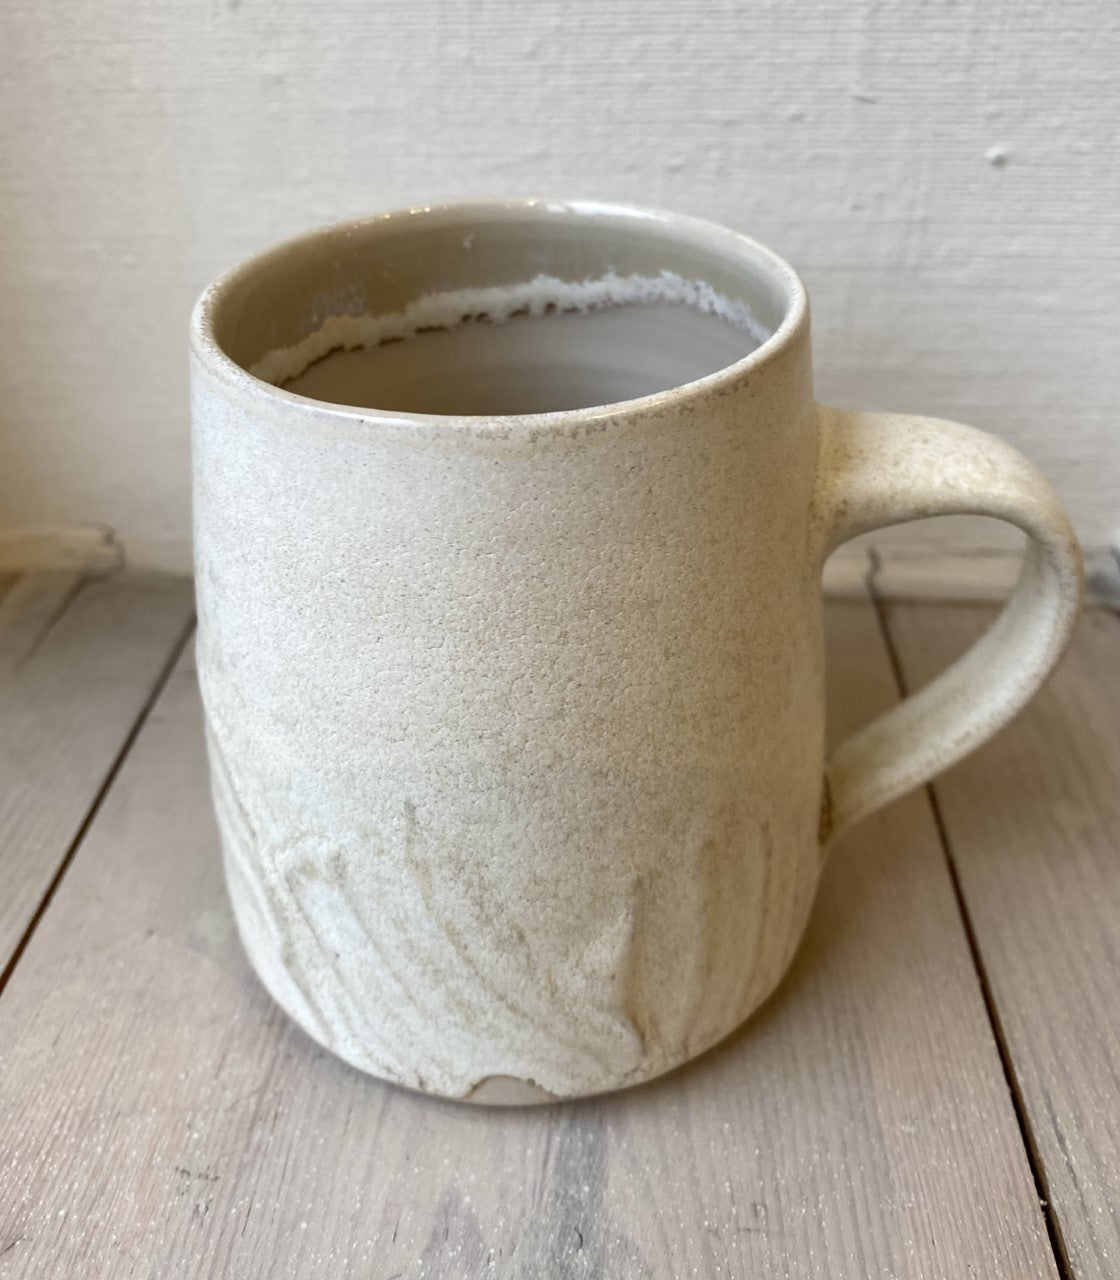 Stoneware mug